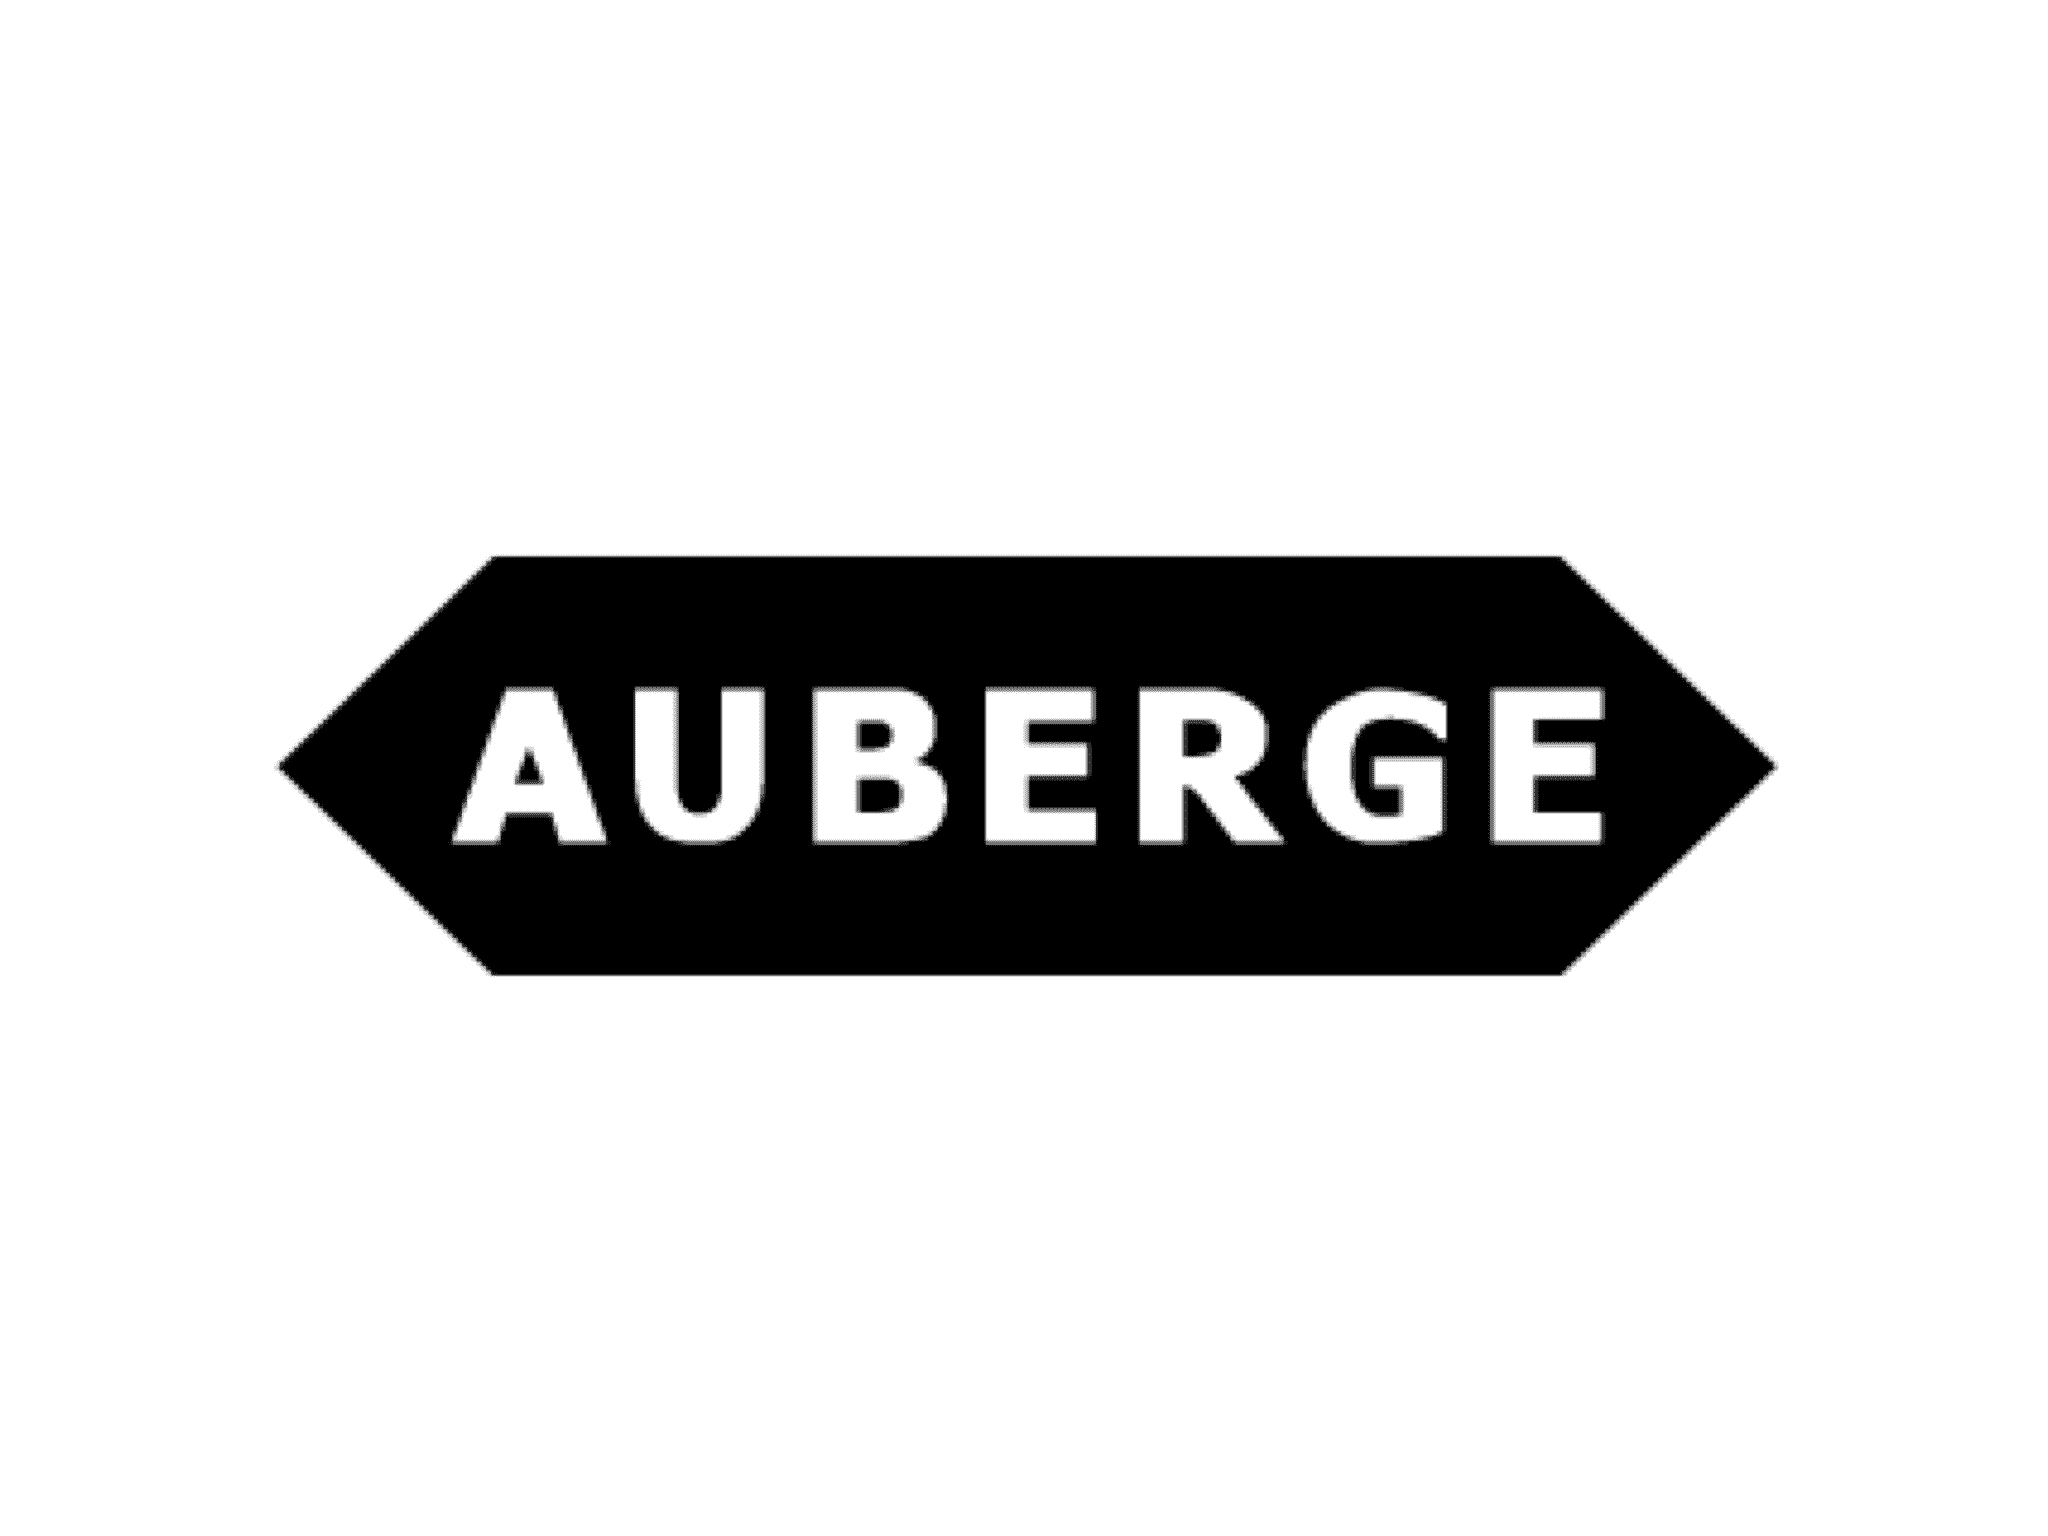 AUBERGE